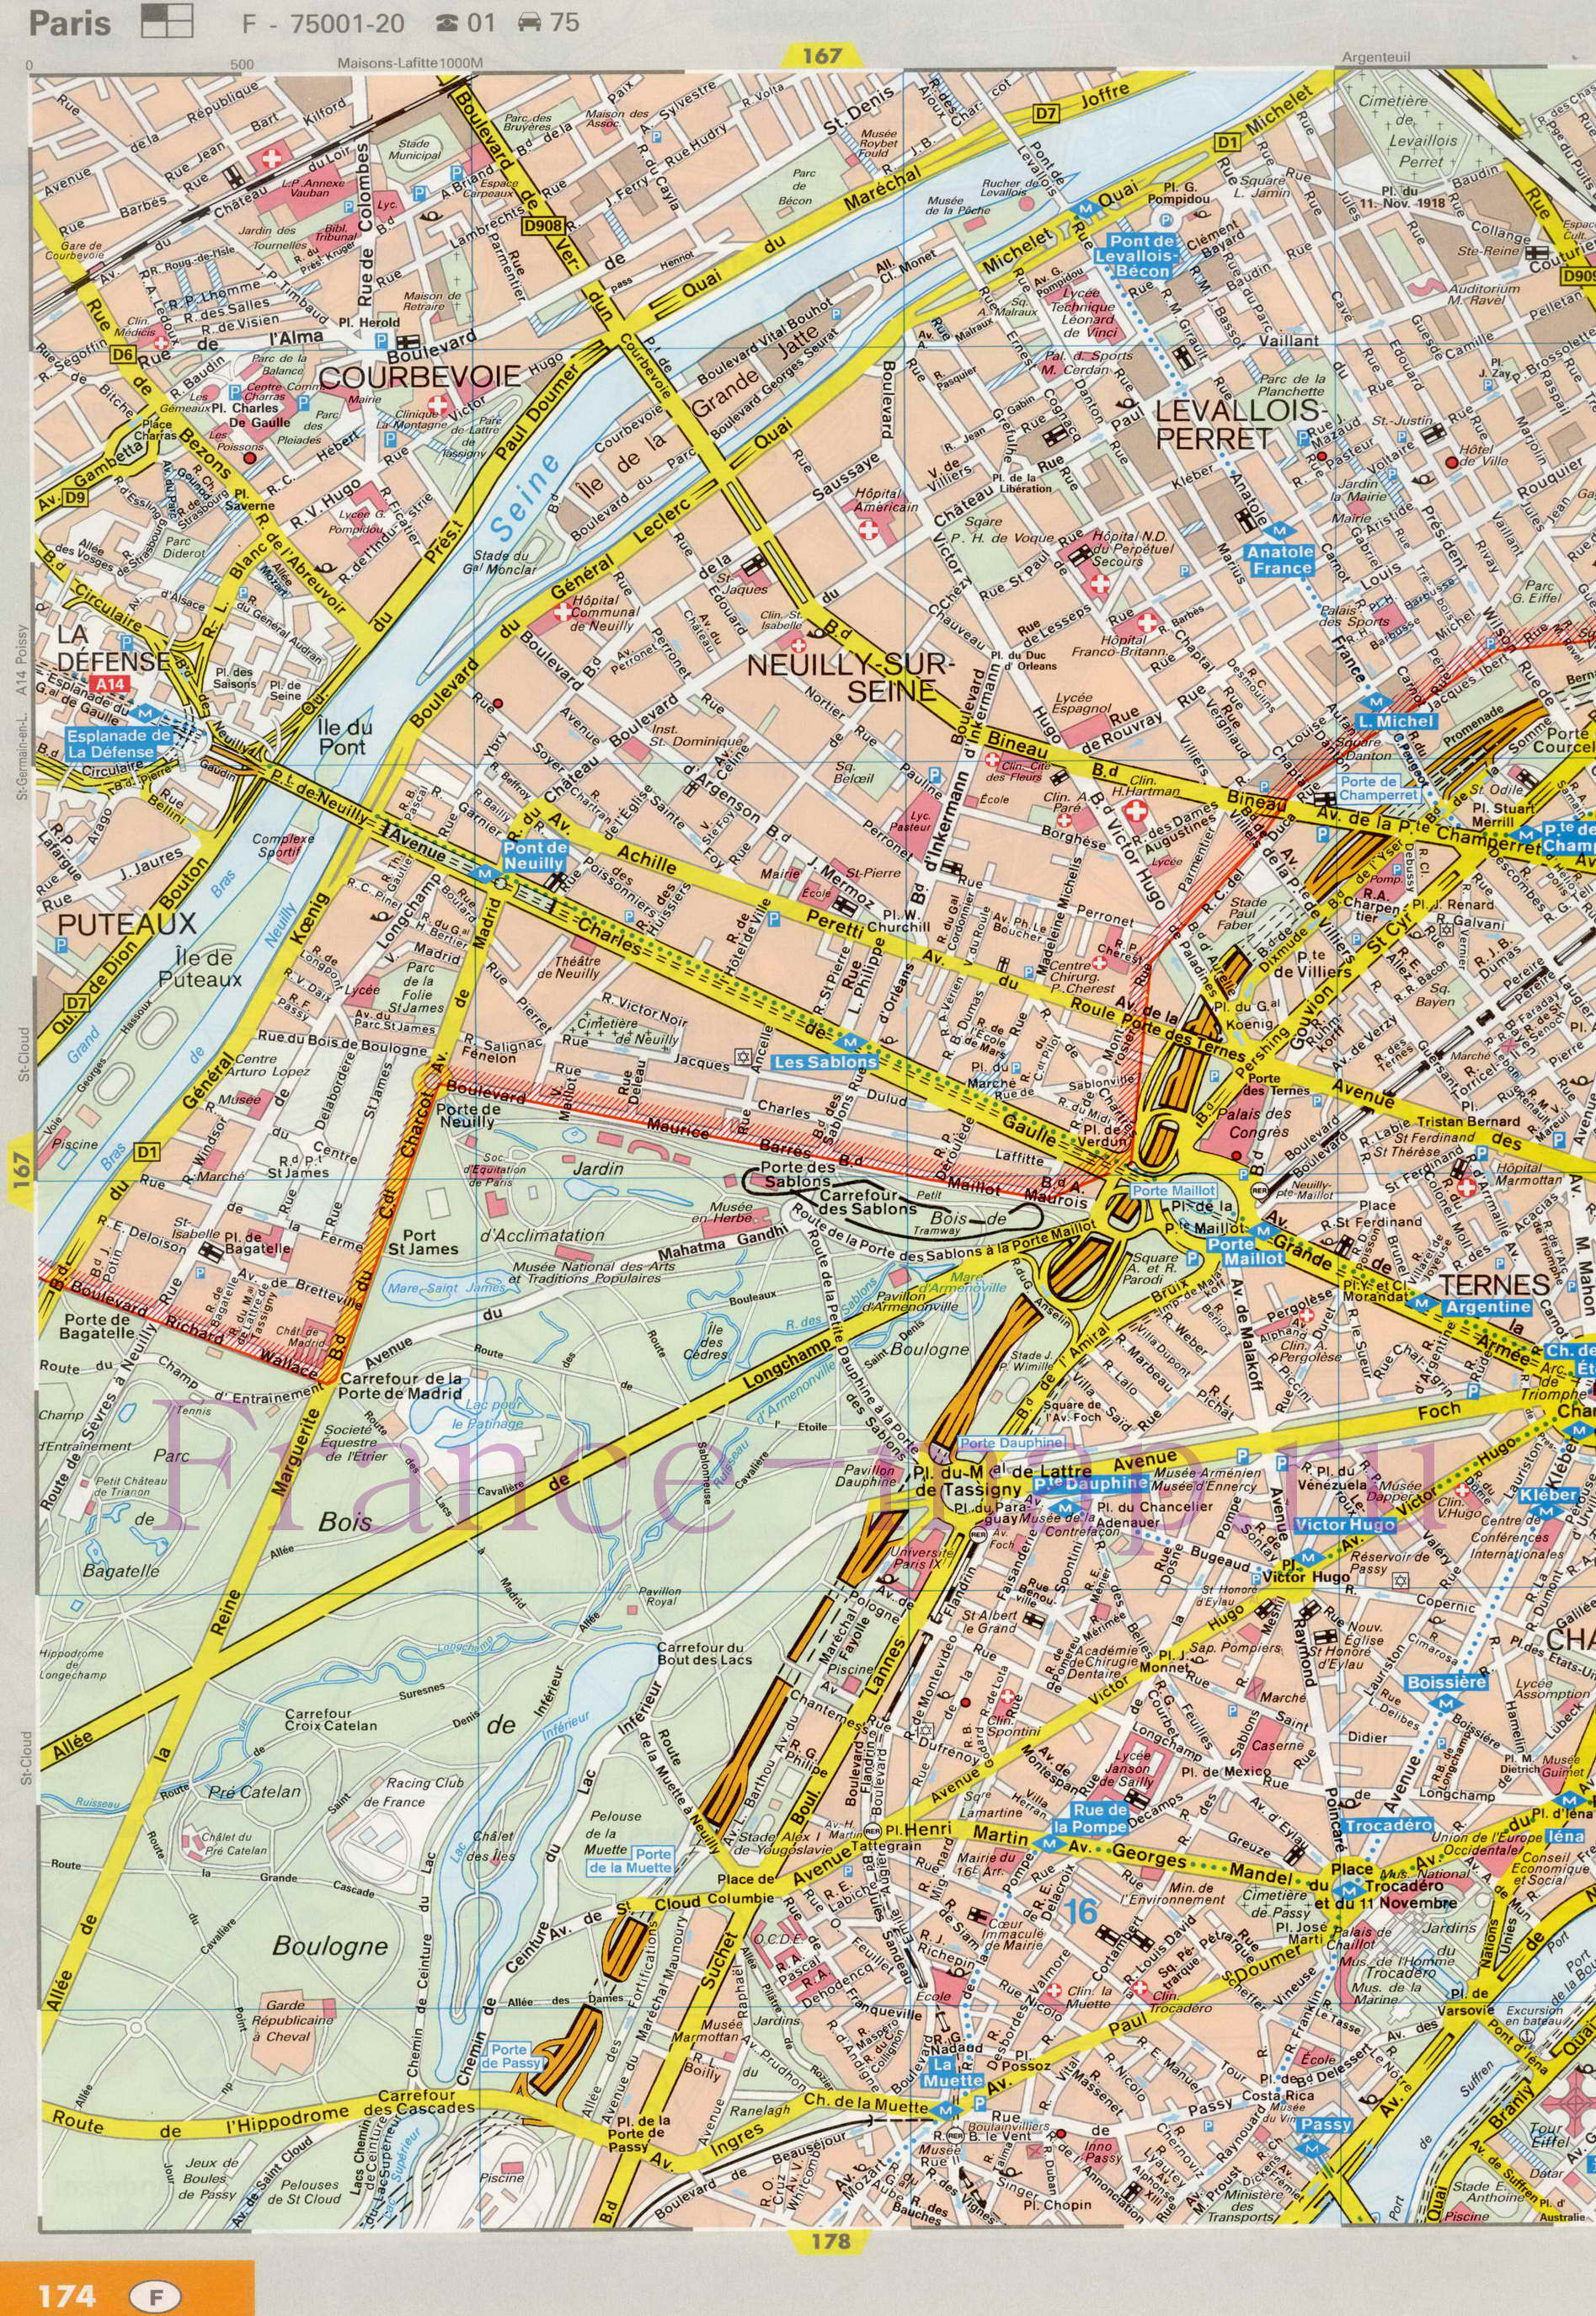 Карта улиц Парижа. Подробная карта Парижа с названиями улиц. Карта Парижа с улицами и достопримечательностями, A0 - 